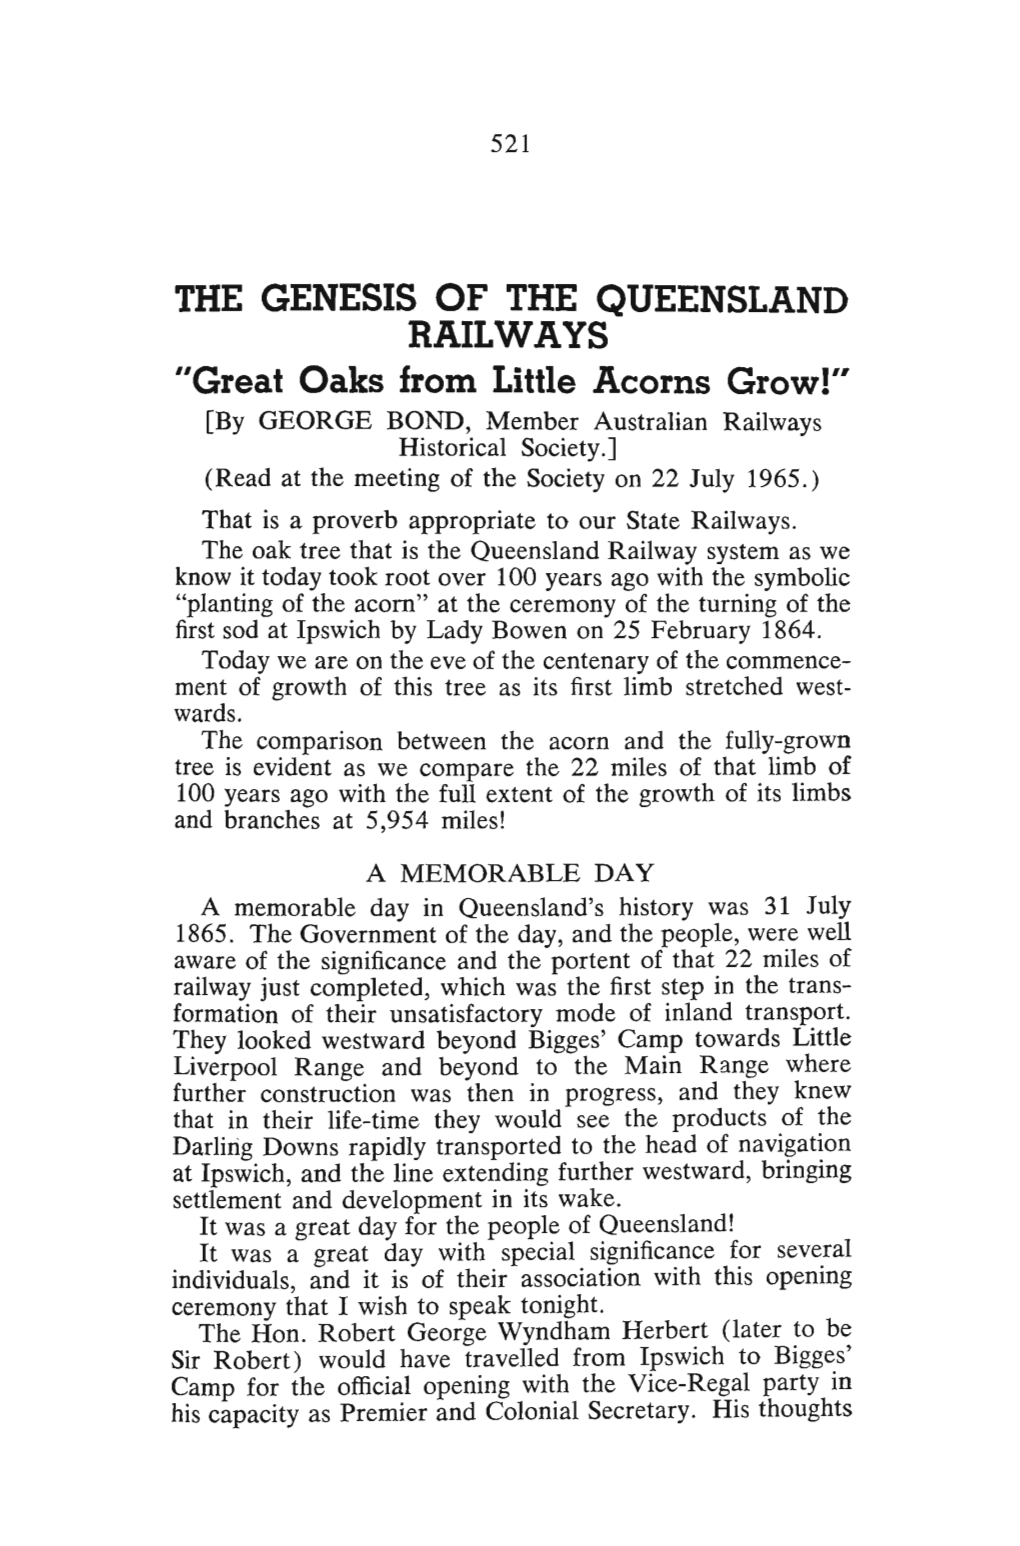 The Genesis of the Queensland